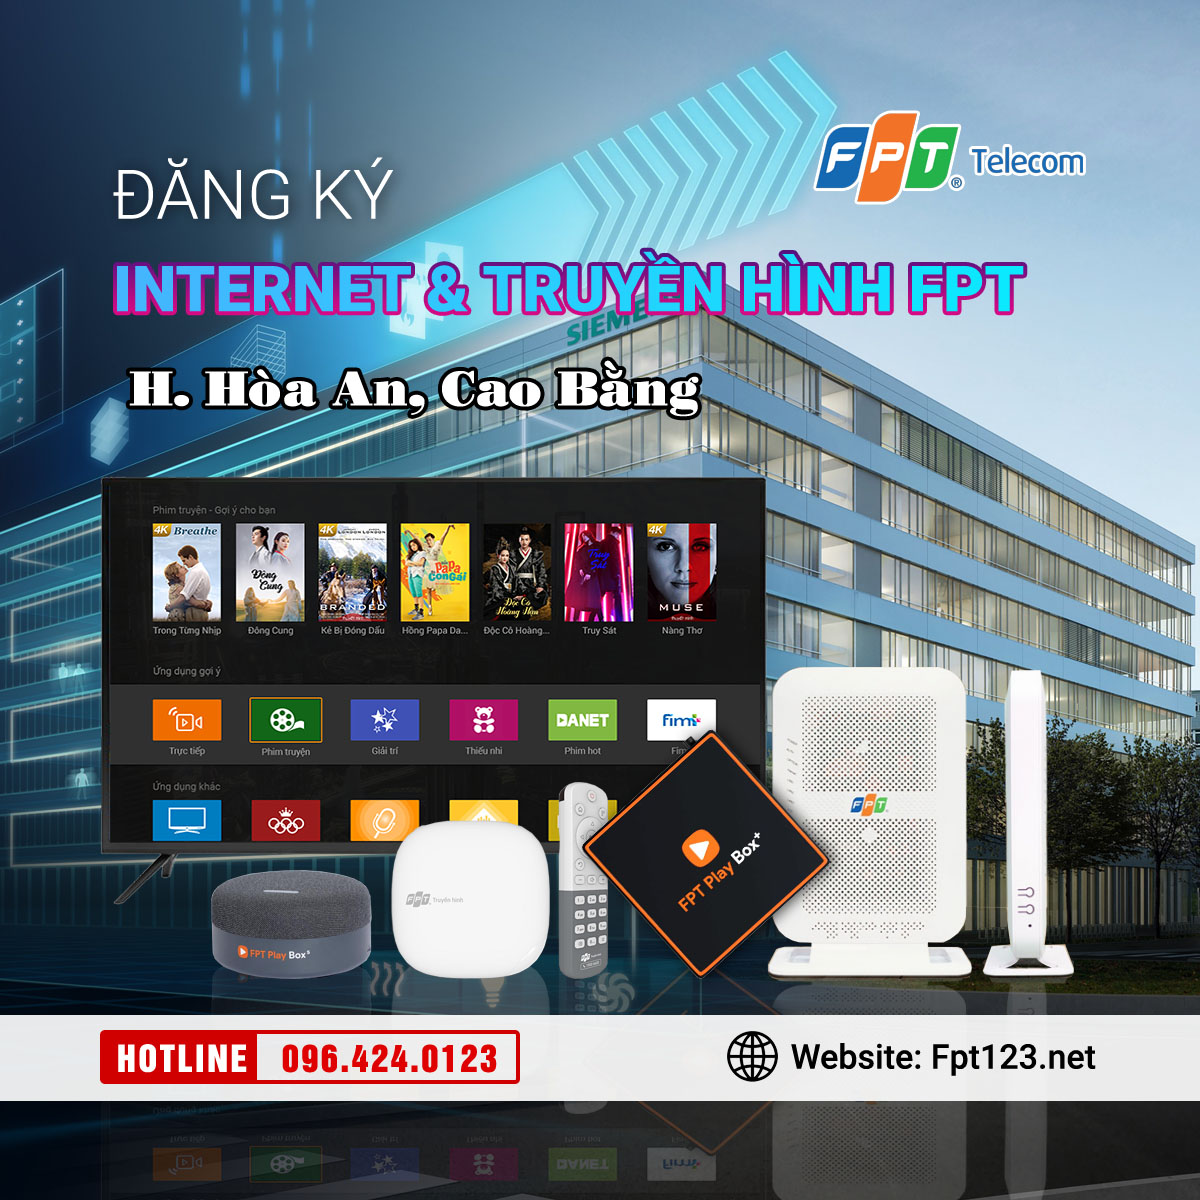 Đăng ký internet và truyền hình FPT huyện Hòa An, Cao Bằng